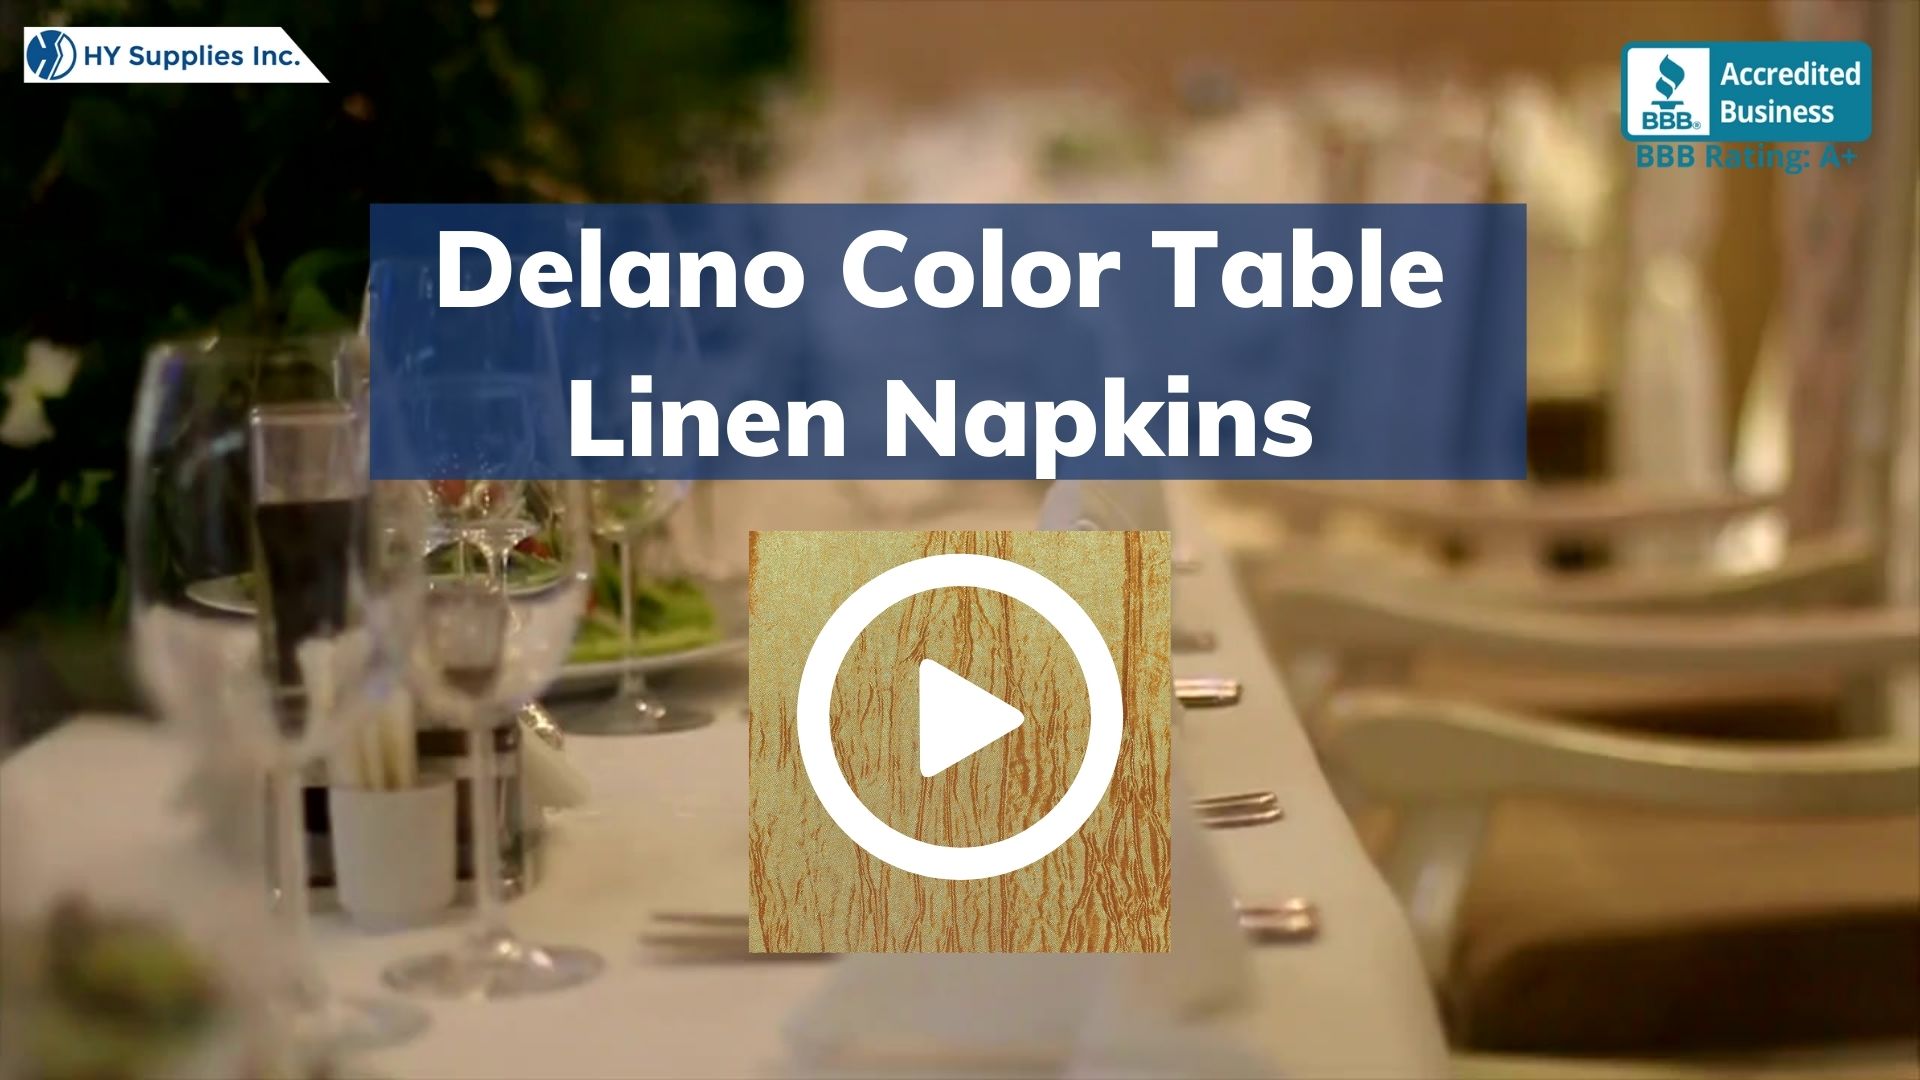 Delano Color Table Linen Napkins